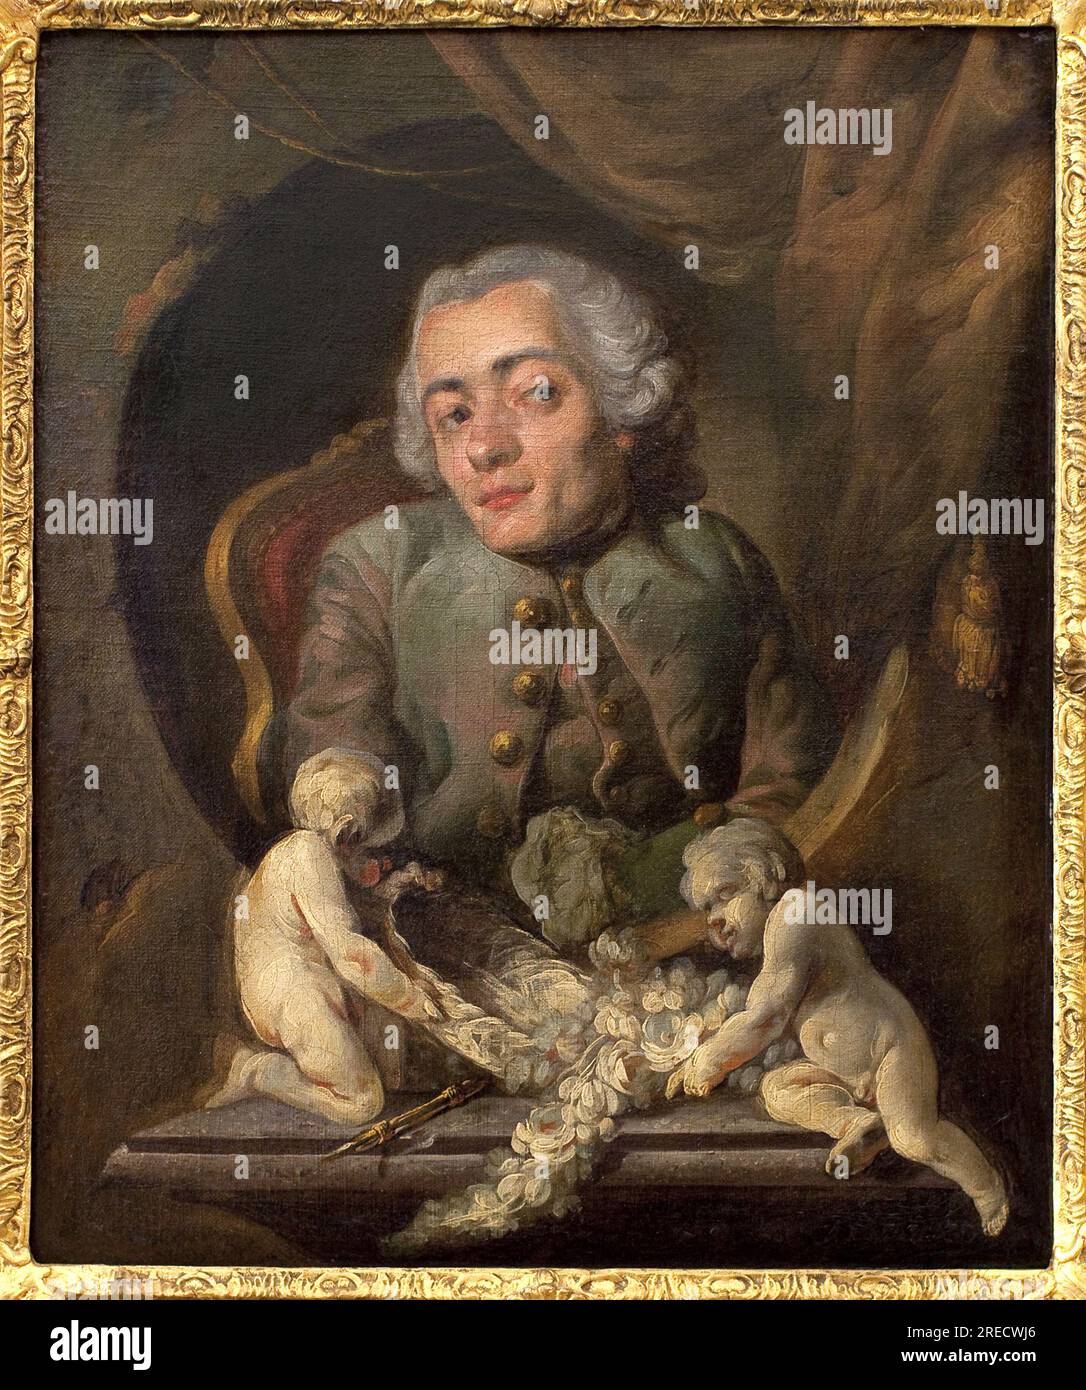 Portrait d'un Artist bossu. Peinture de Gabriel Jacques de Saint Aubin (1724-1780), huile sur toile. Art francais 18e Siecle. Musée des Beaux Arts de Rouen. Stockfoto